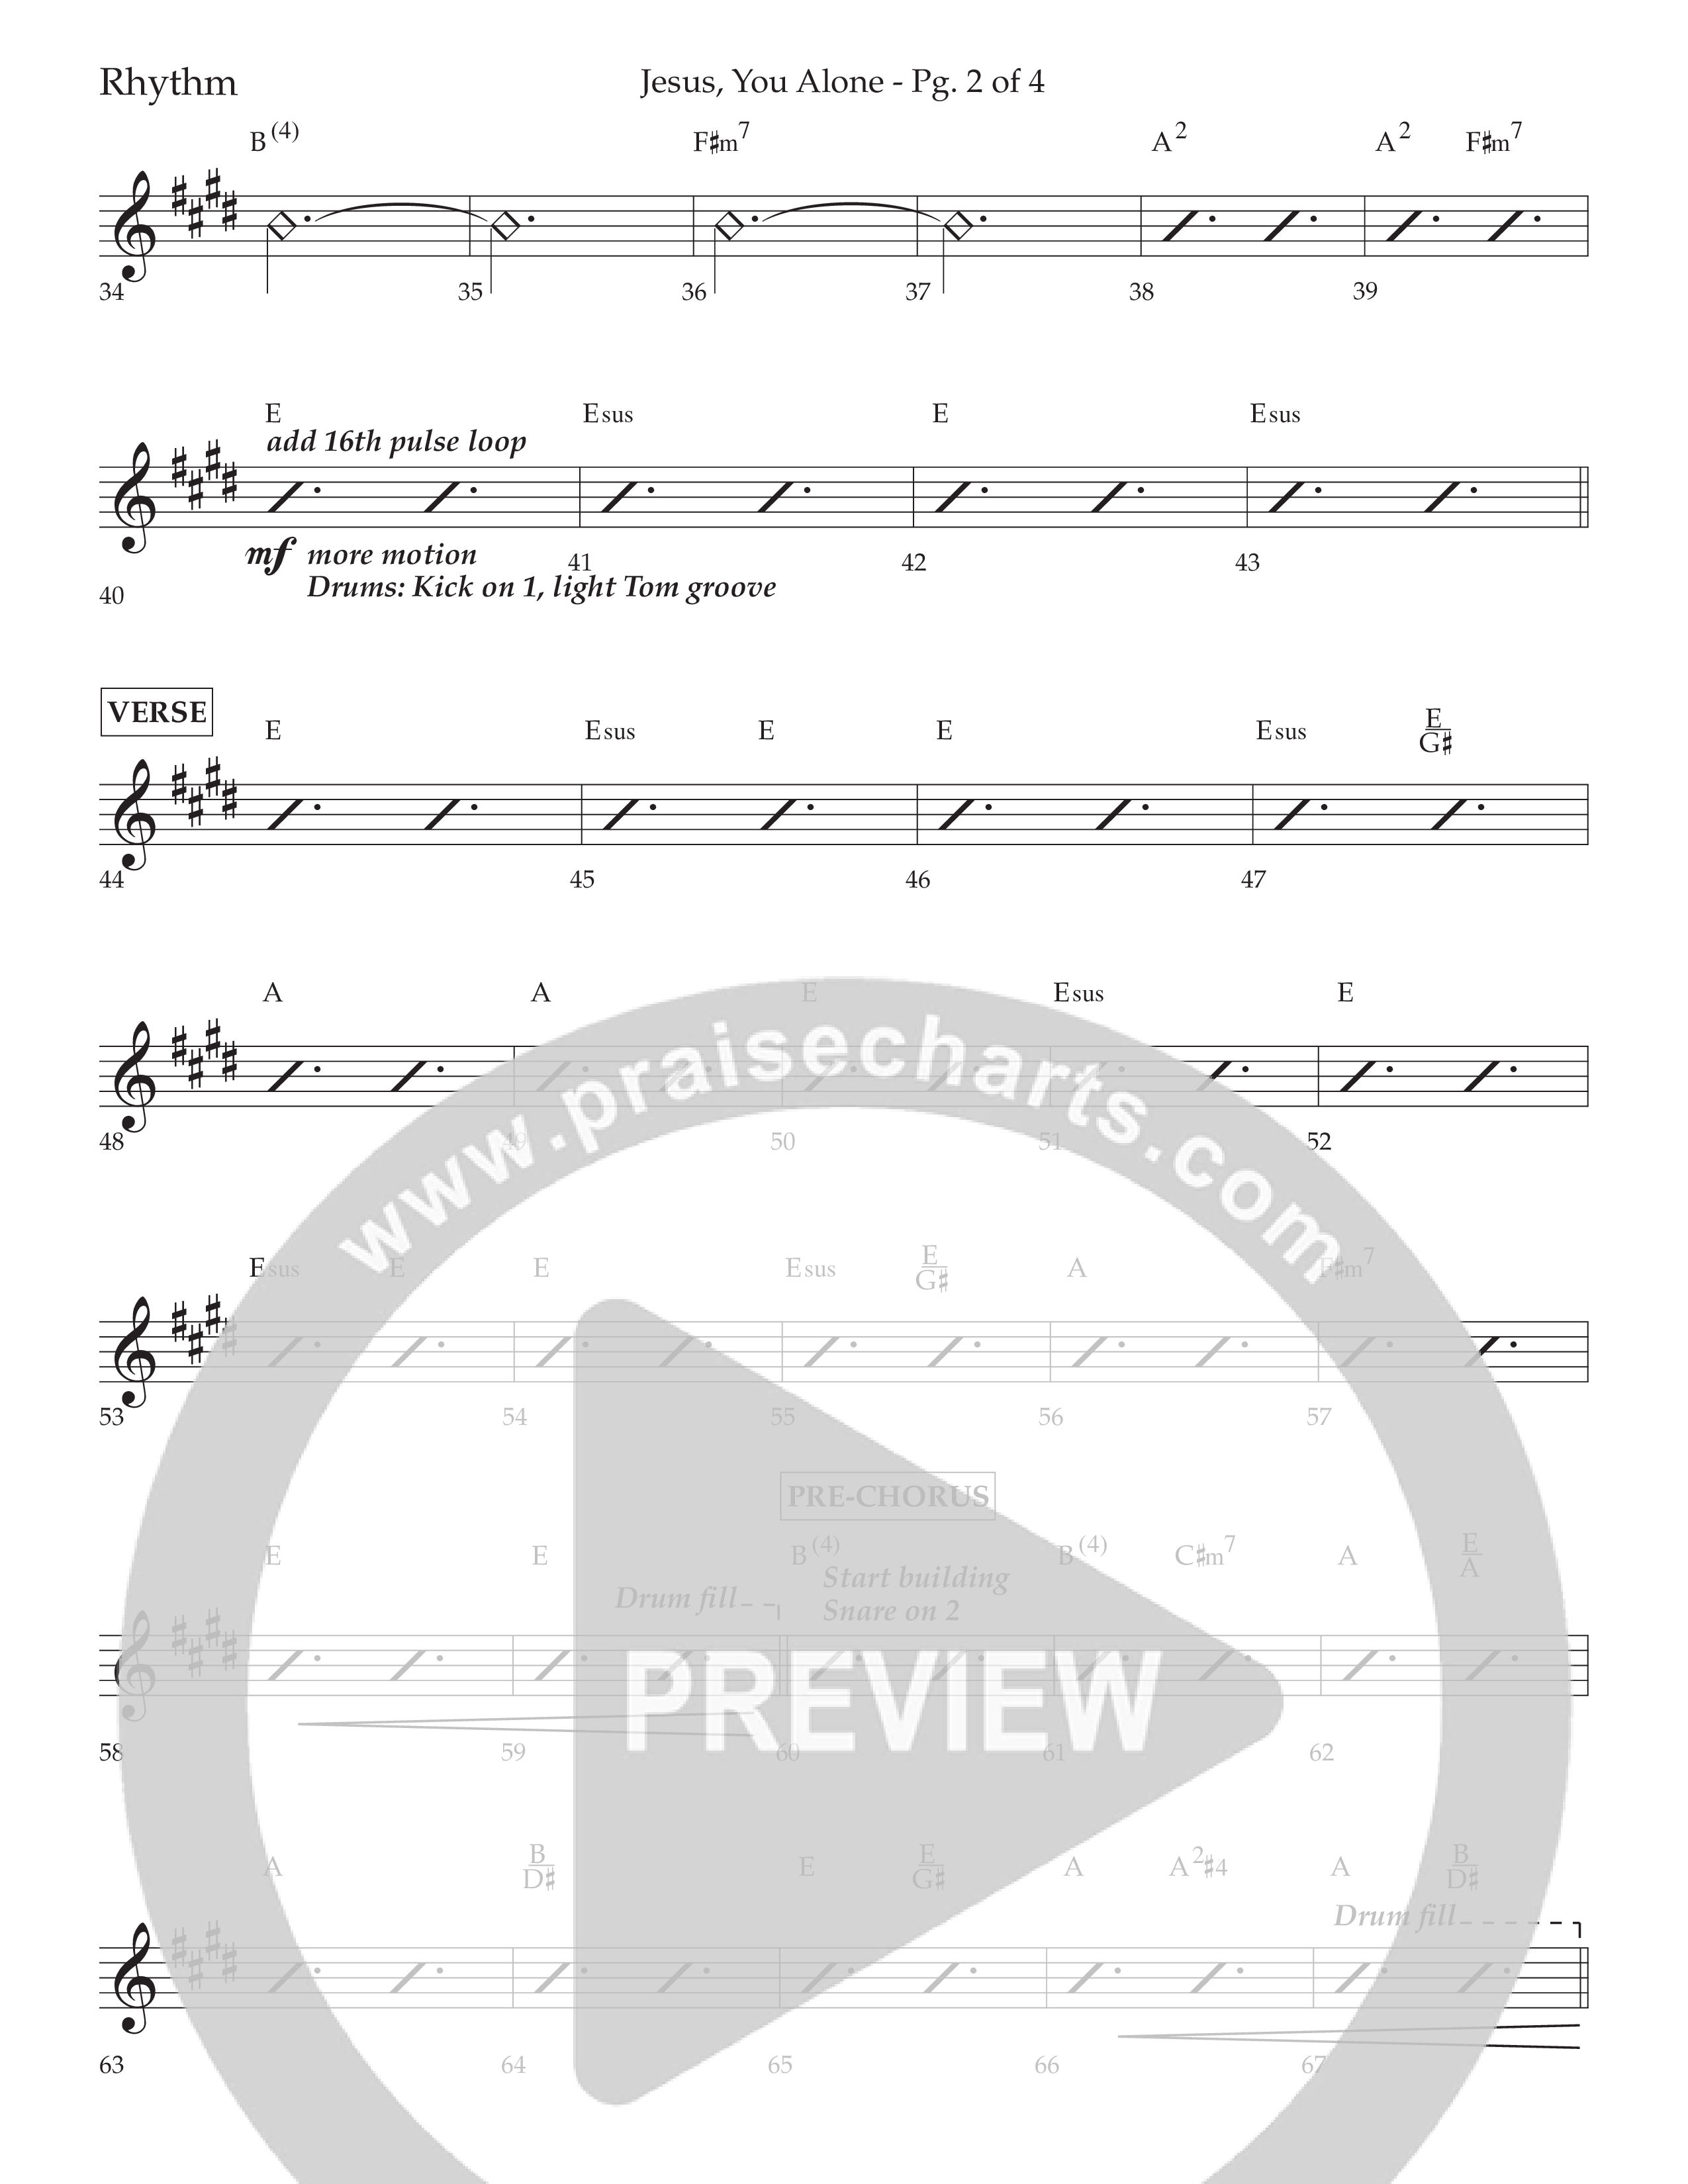 Jesus You Alone (Choral Anthem SATB) Lead Melody & Rhythm (Lifeway Choral / Arr. David Wise / Orch. Bradley Knight)